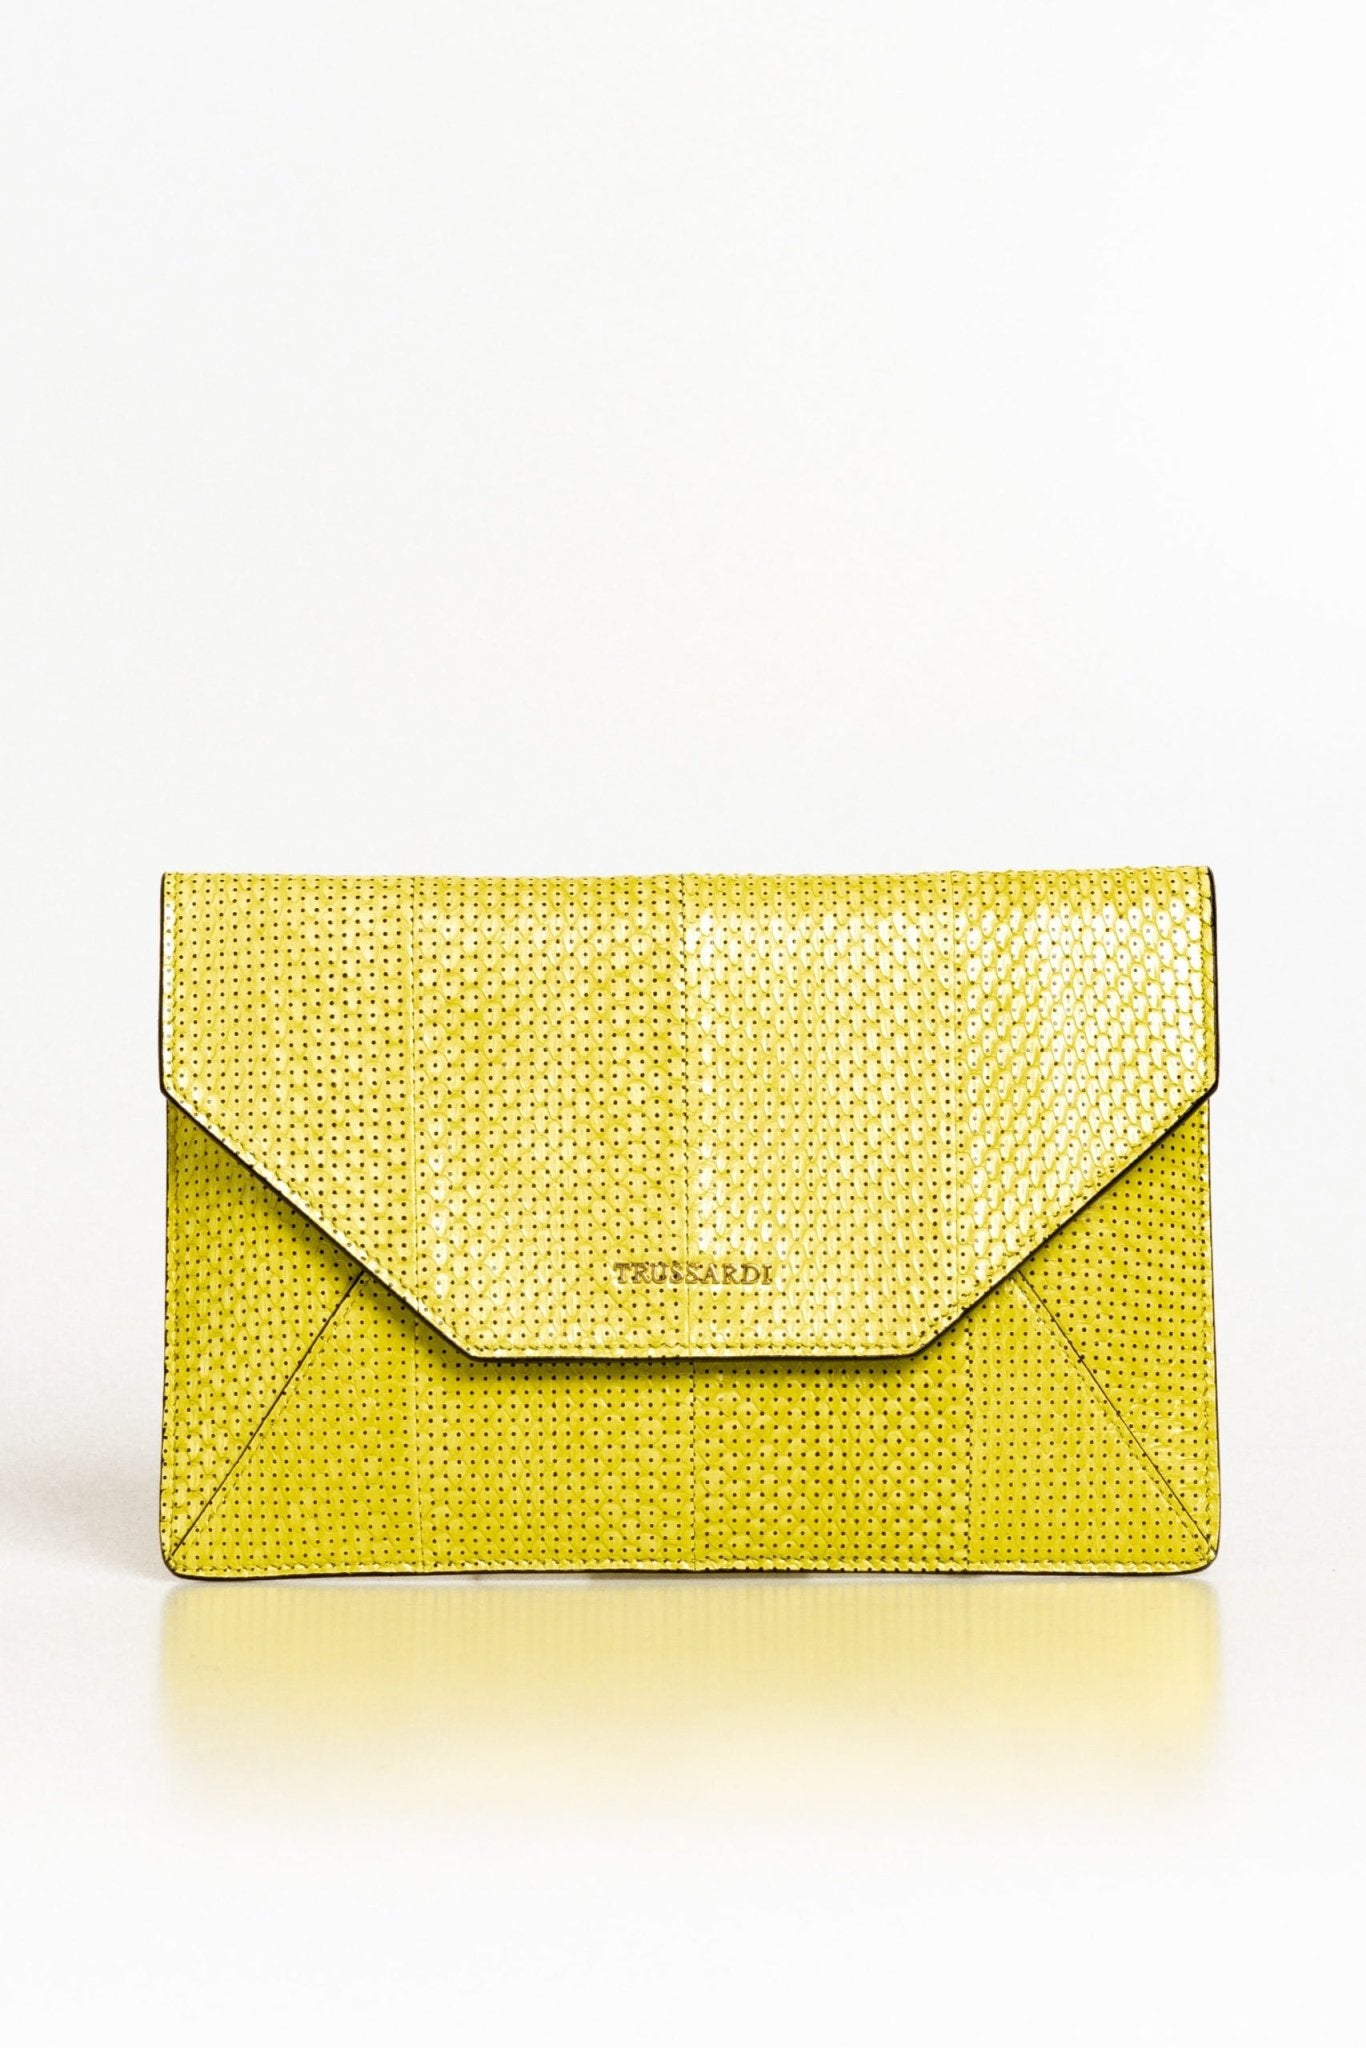 Trussardi Yellow Leather Clutch Bag - Fizigo